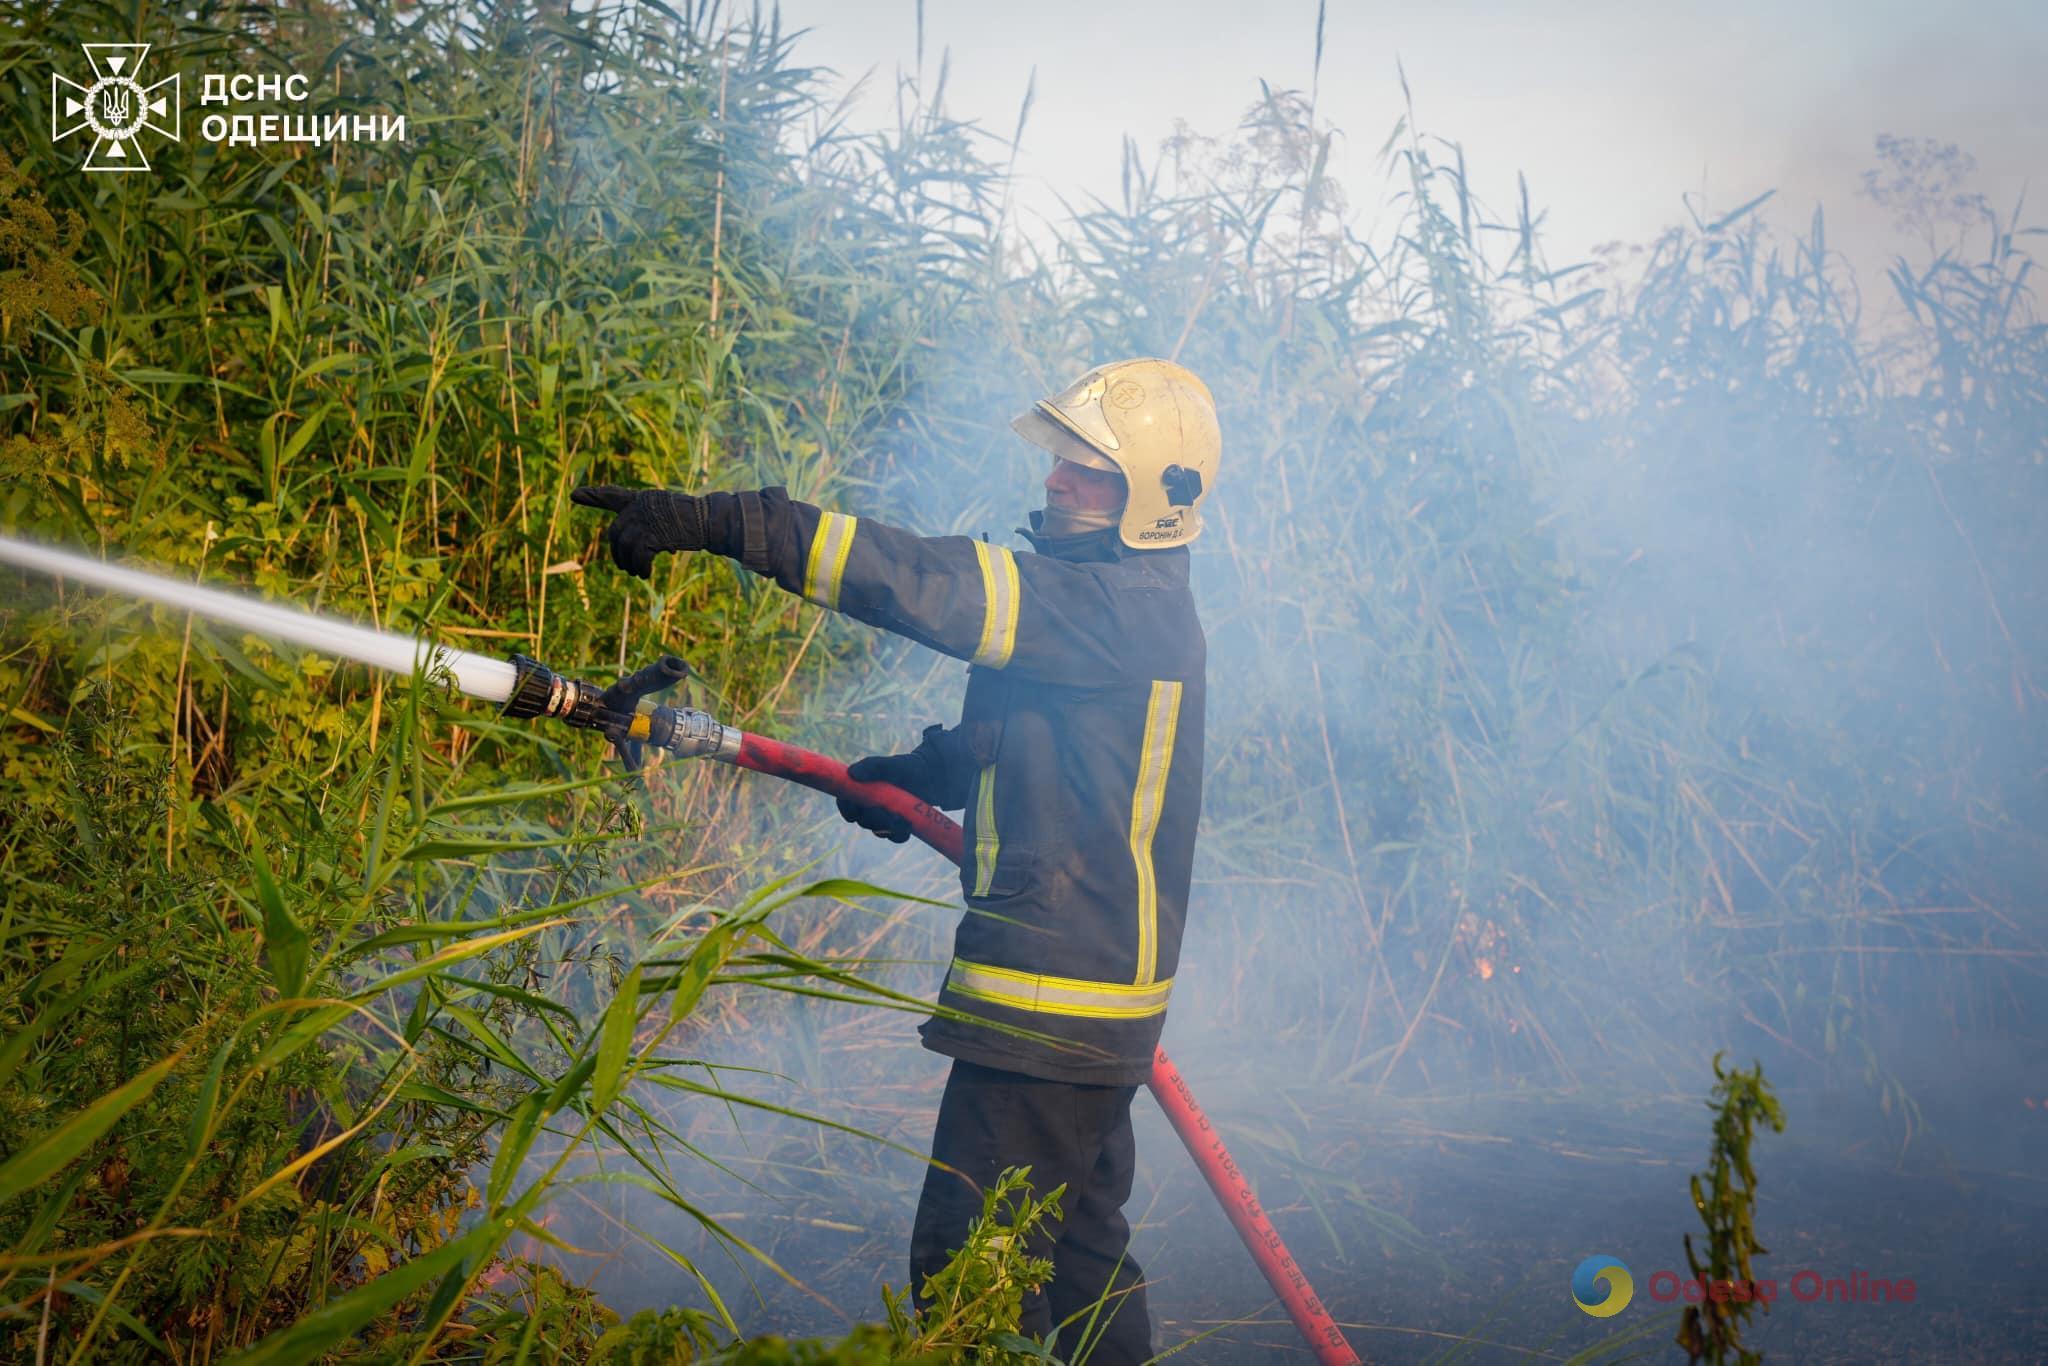 В Одесской области за сутки выгорело более 60 гектаров земли (фото, видео)